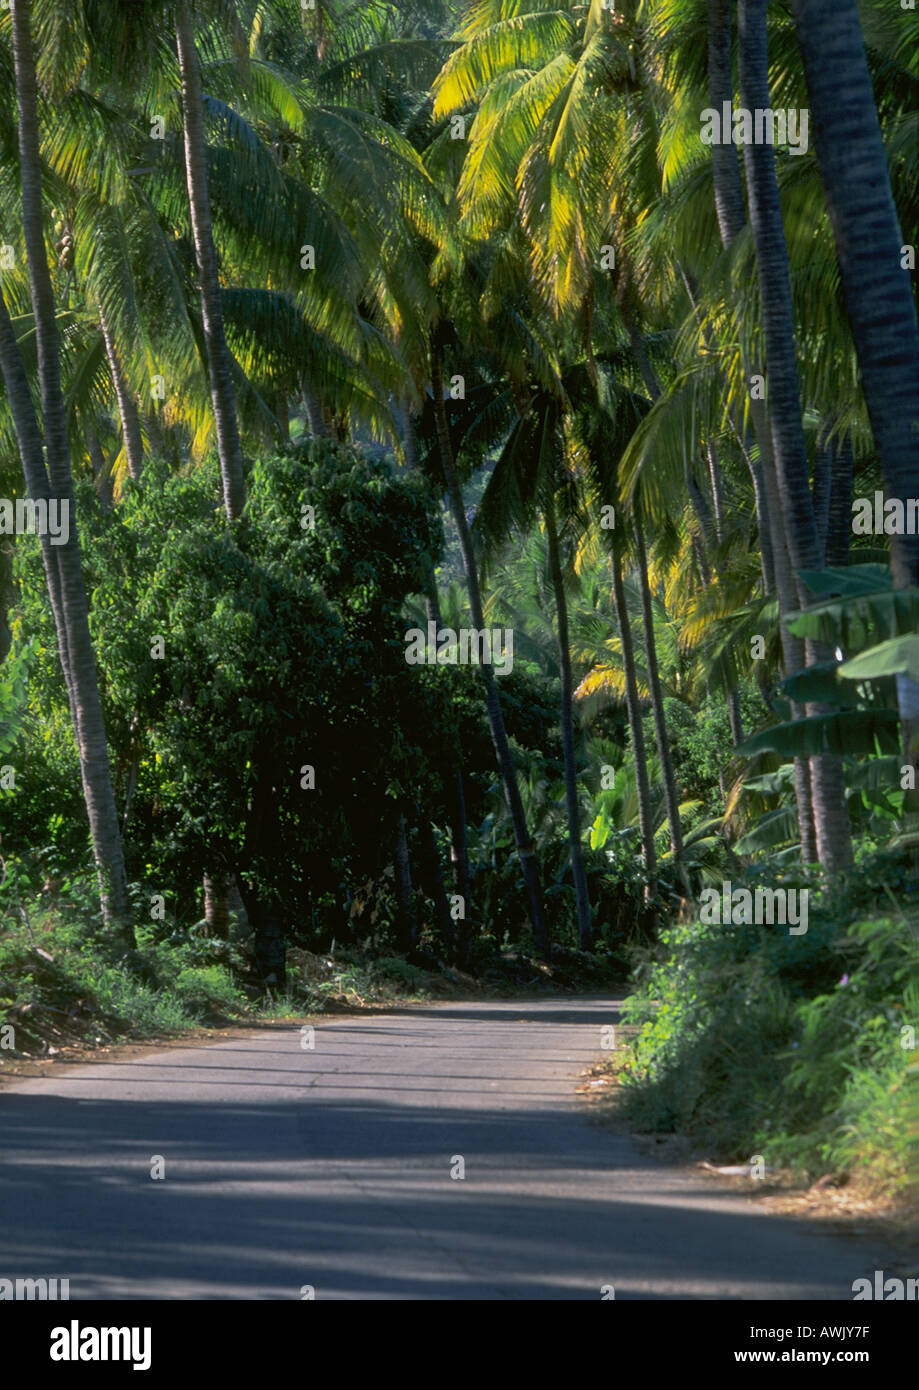 La réunion, route à travers la forêt tropicale Banque D'Images